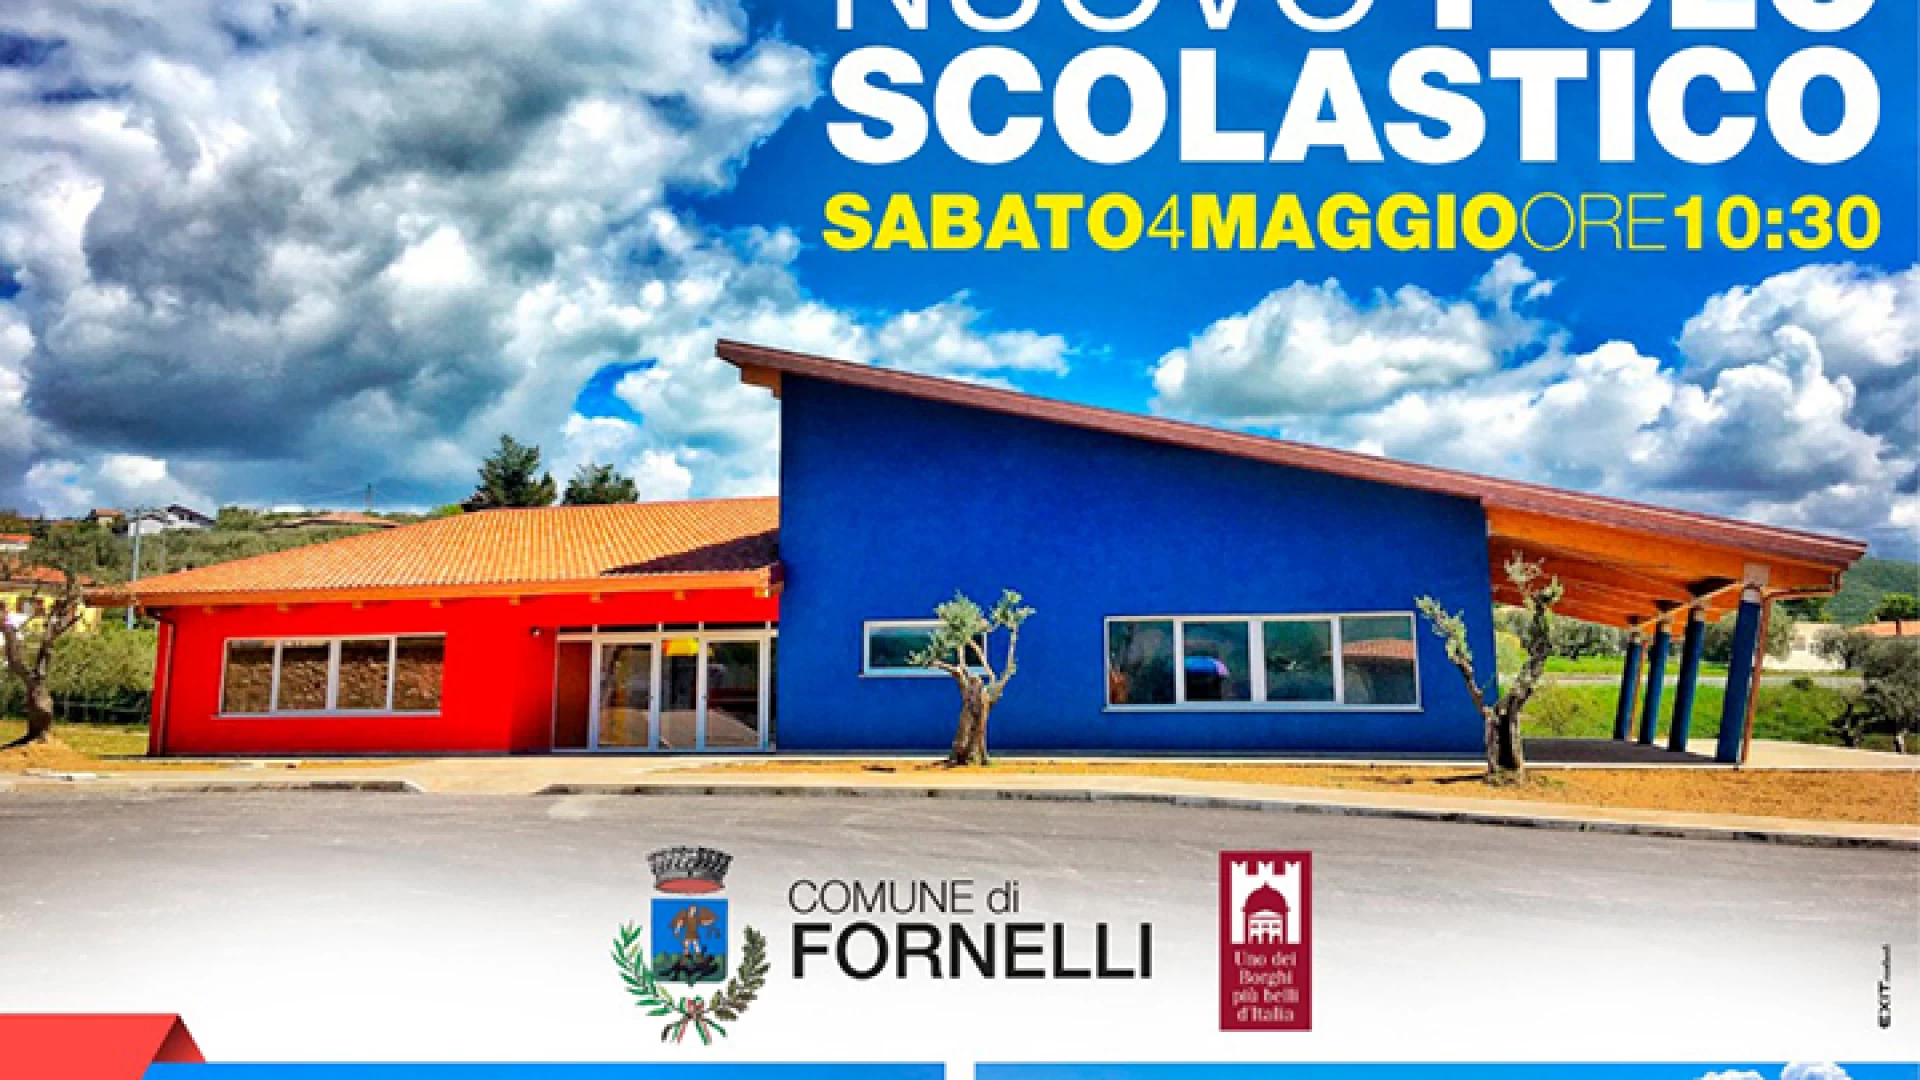 Fornelli: Sabato 4 maggio si inaugura il mega polo scolastico. “Il migliore regalo che potessimo fare ai nostri giovani”. Così il sindaco Giovanni Tedeschi.